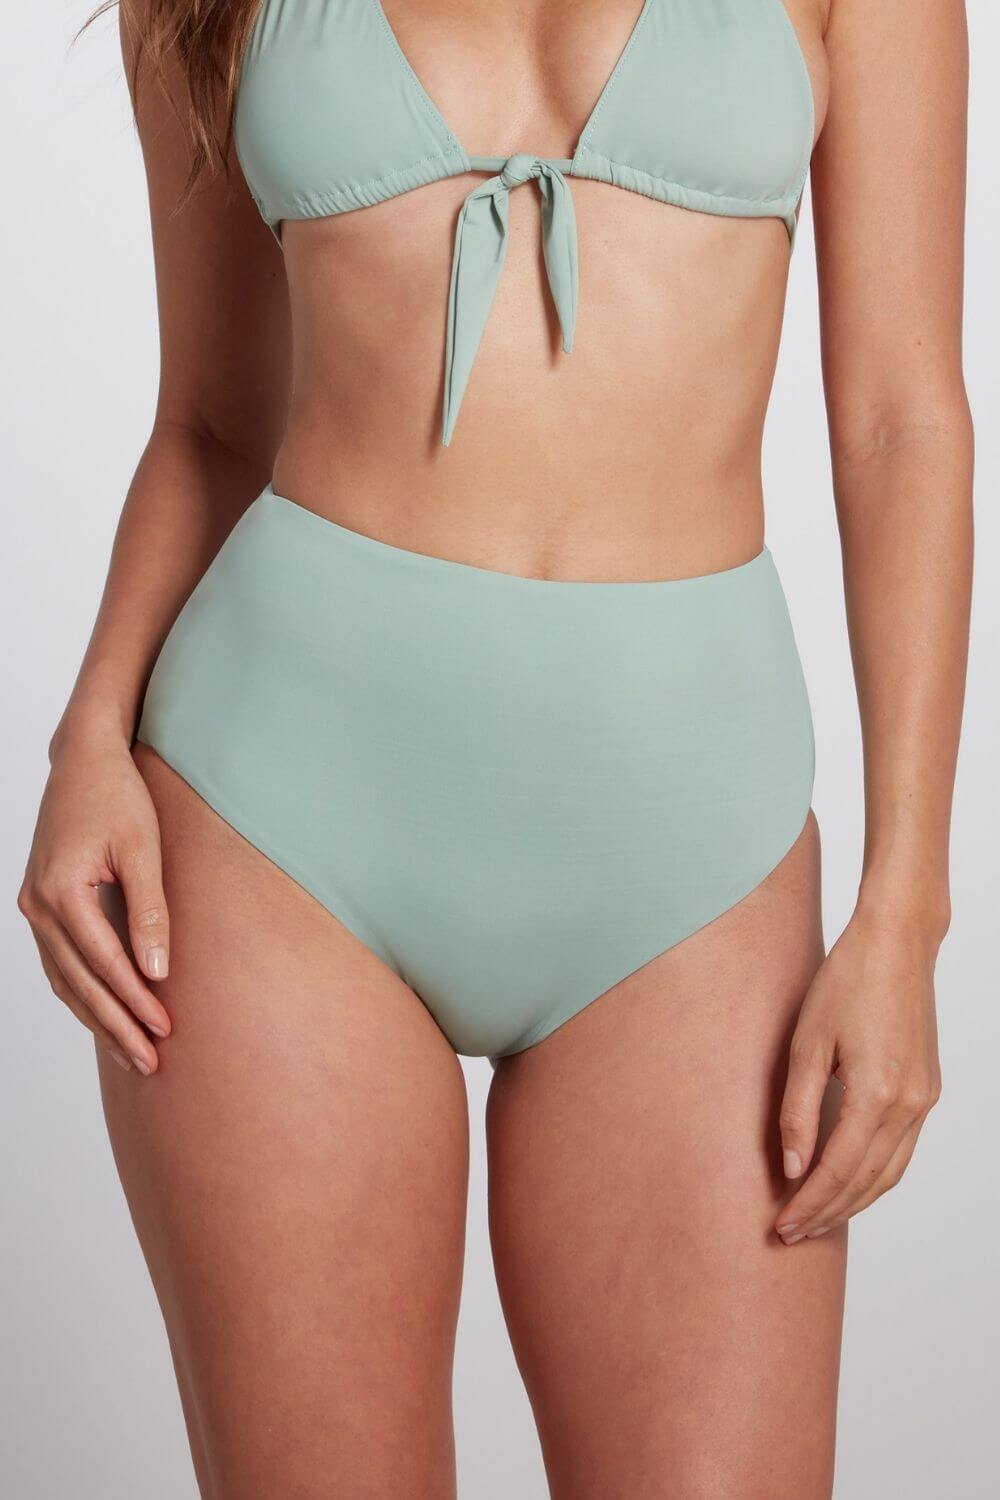 Elegant high waisted bikini bottom in sage green.